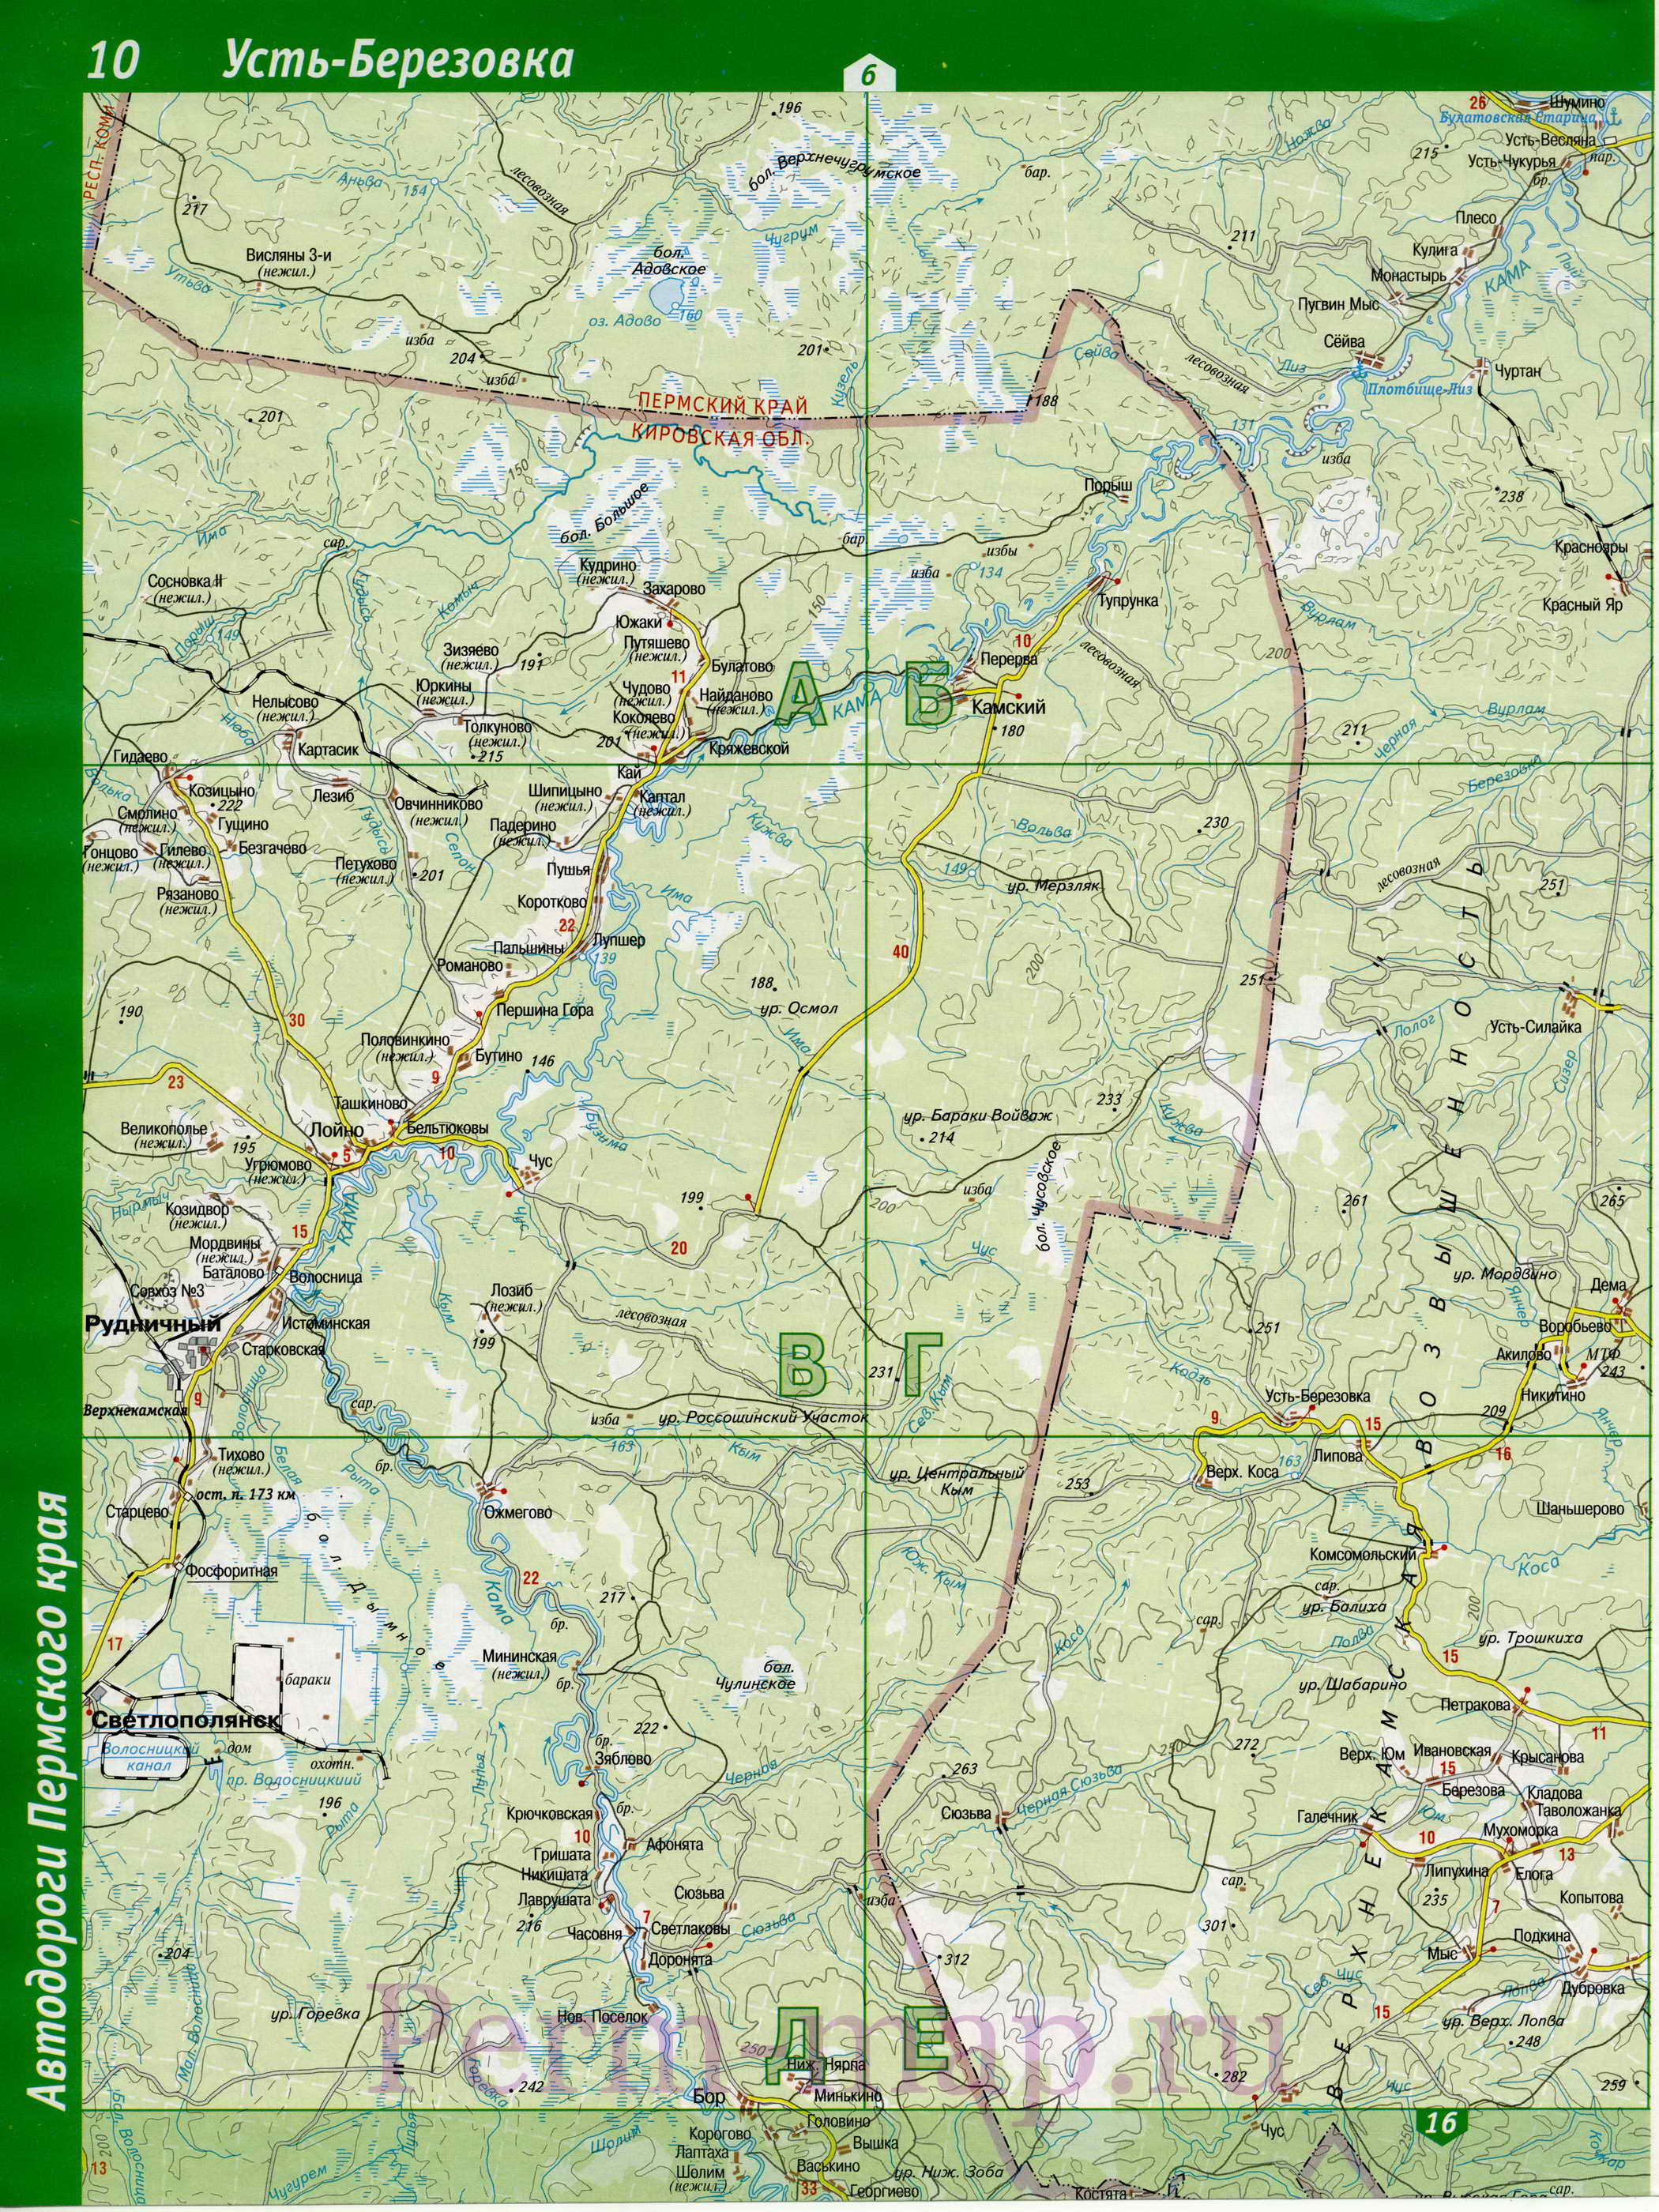 Гайнский район Коми-Пермяцкого автономного округа - топографическая карта. карта Гайнского района, A1 - 